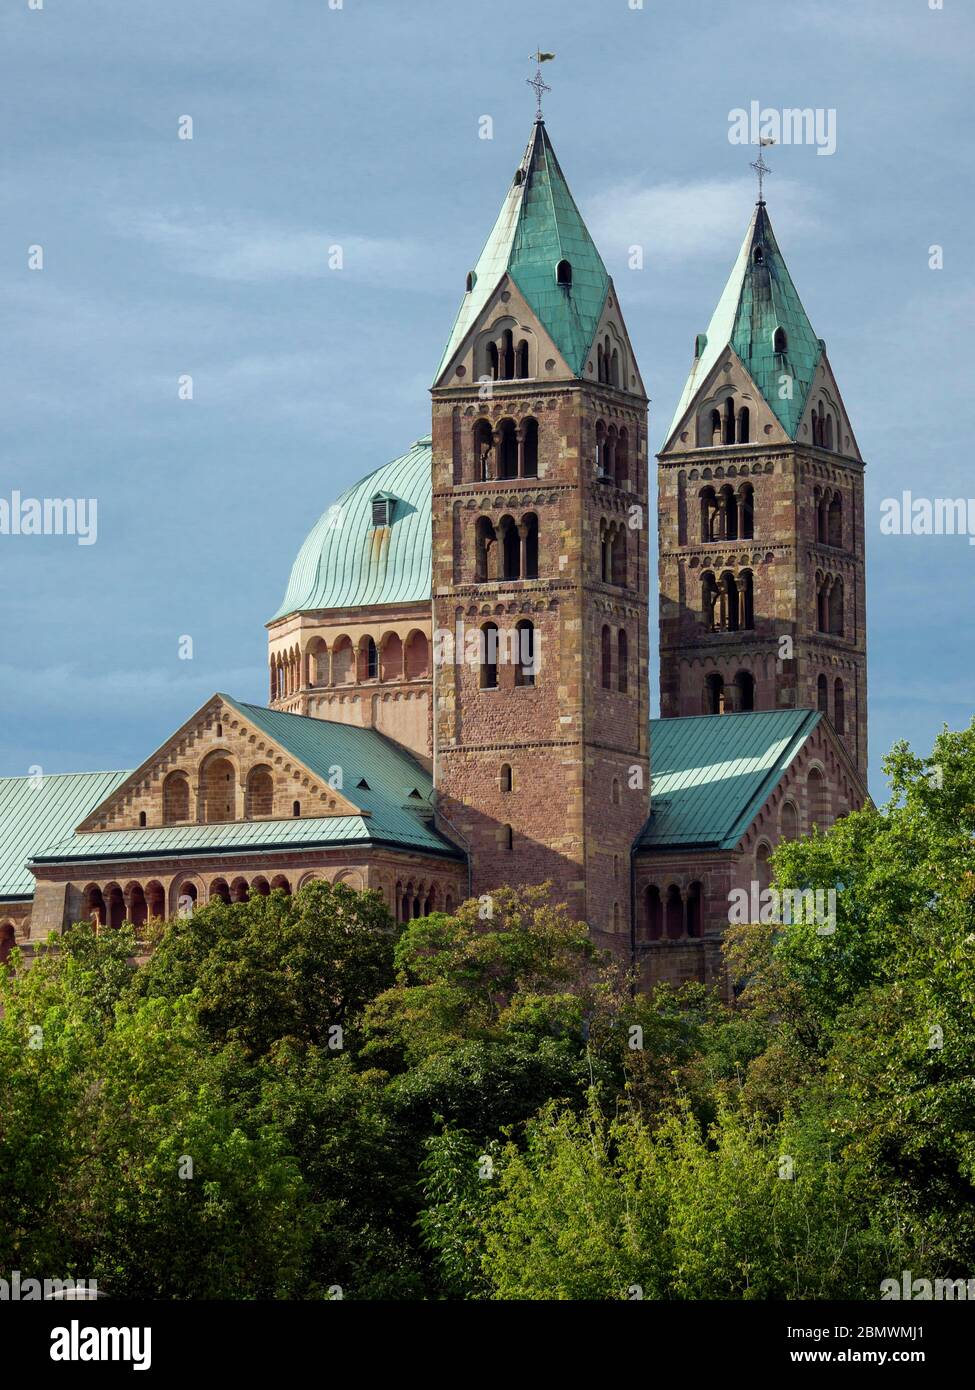 Dom zu Speyer, Südseite, Speyer, UNESCO Weltkulturerbe, Rheinland-Pfalz, Deutschland Foto de stock